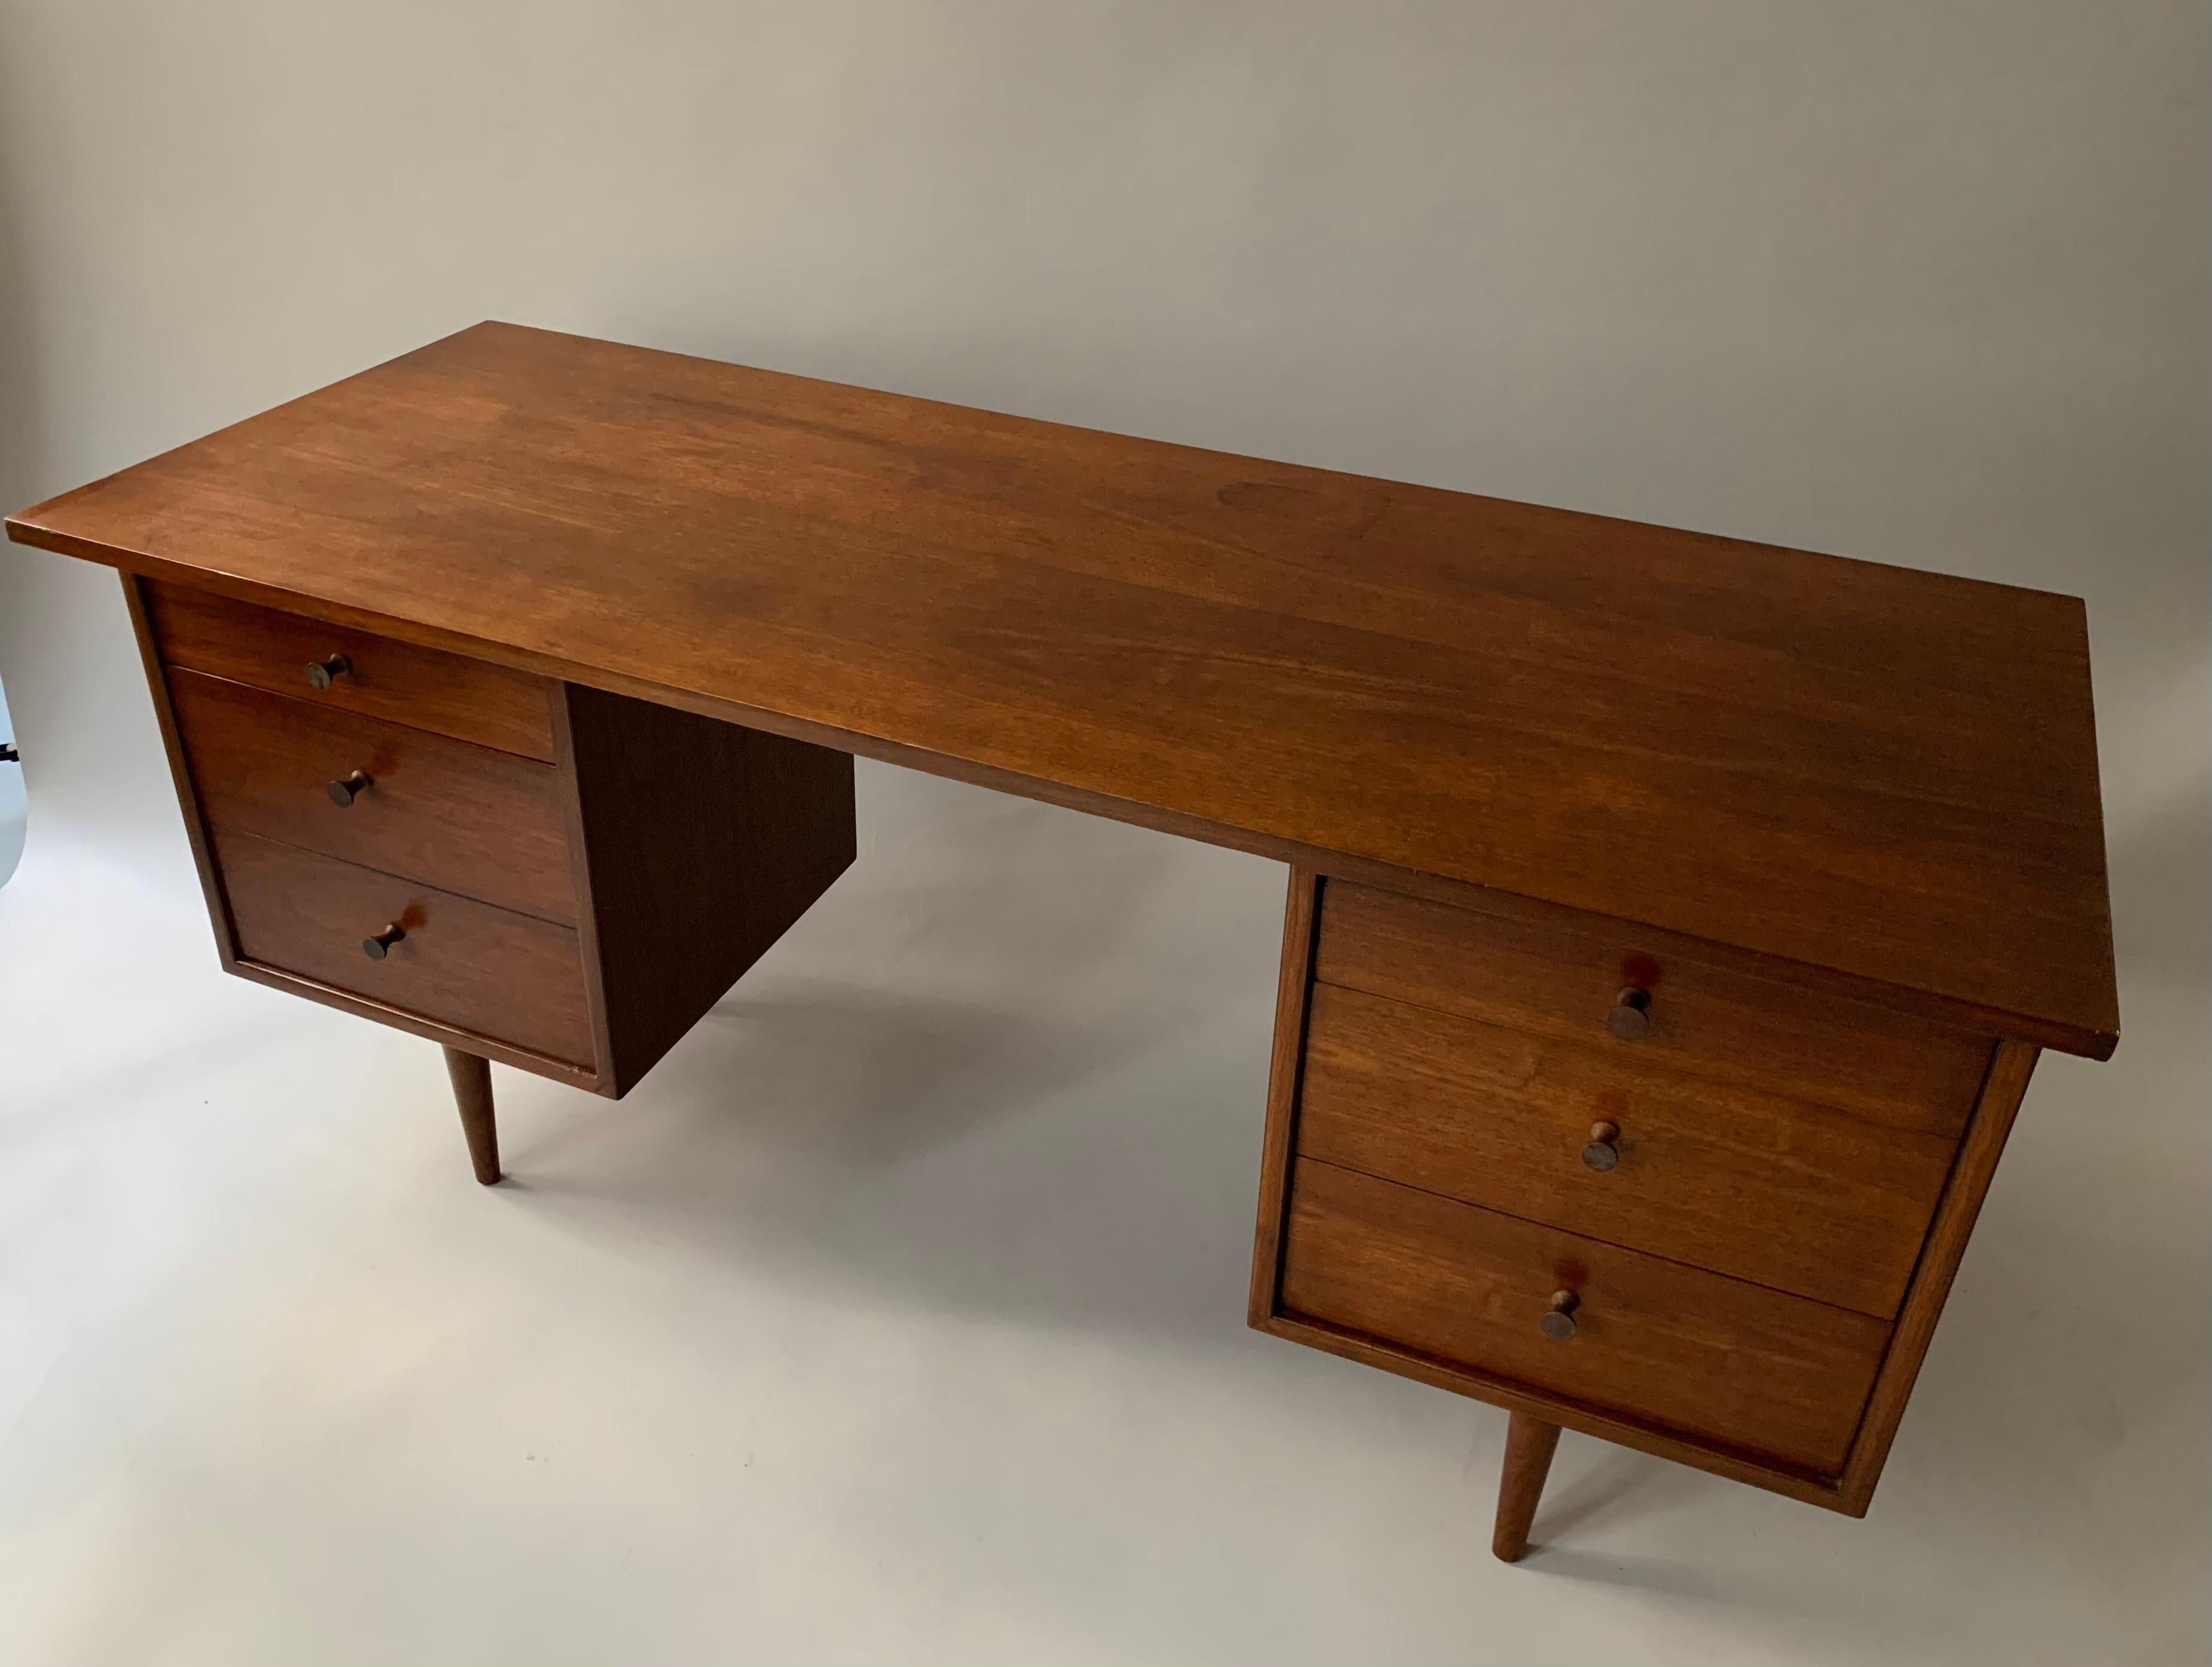 Mid-20th Century Walnut Desk by Richard Artschwager